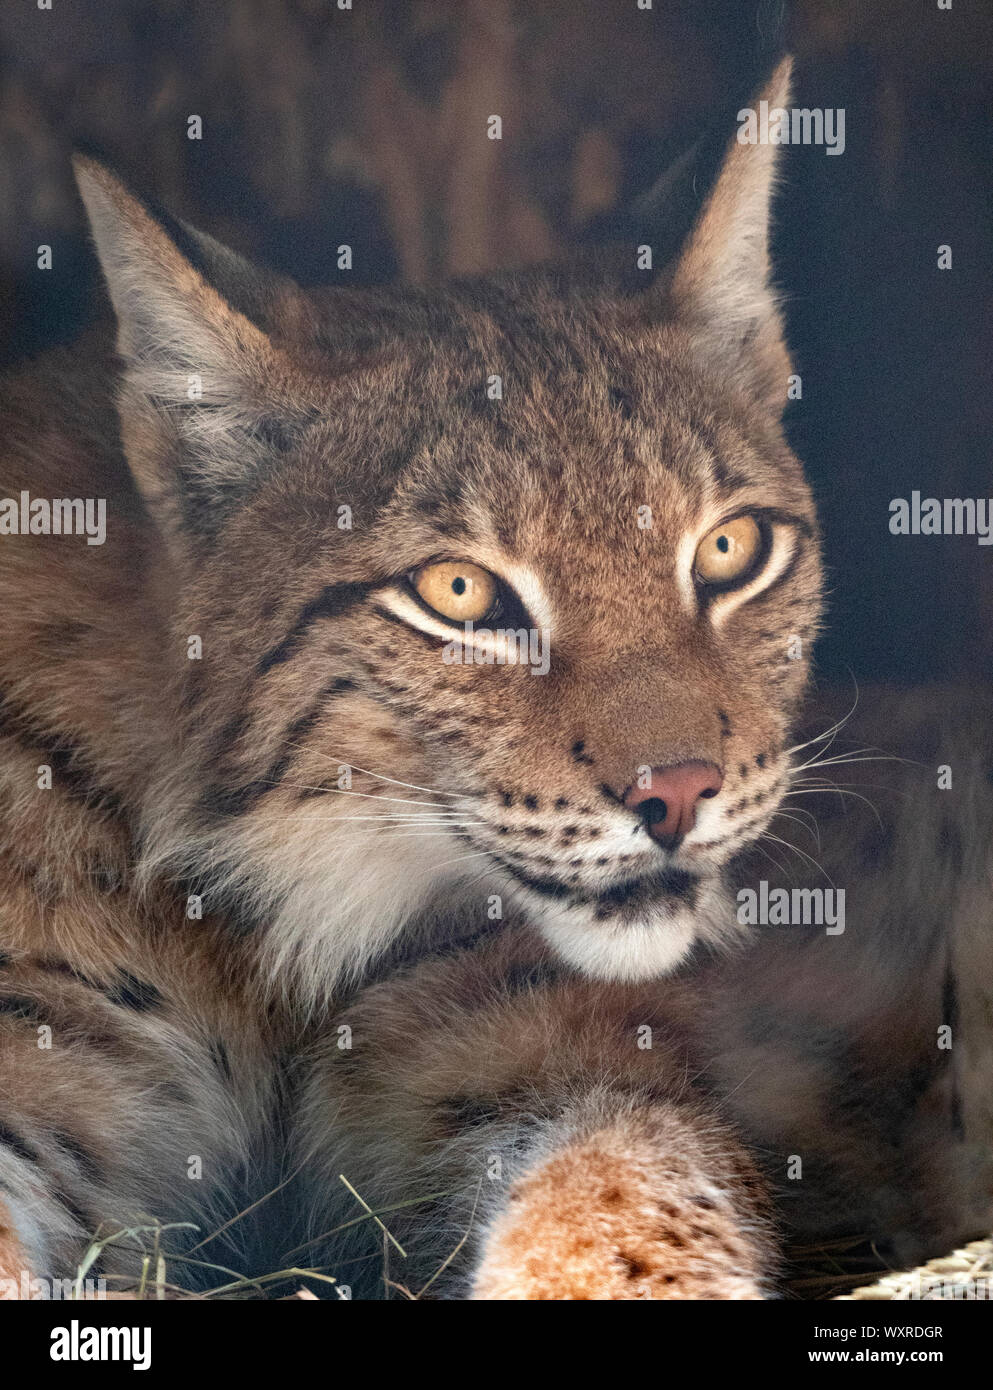 Lynx mira con ojos depredadores del albergue. Foto de stock